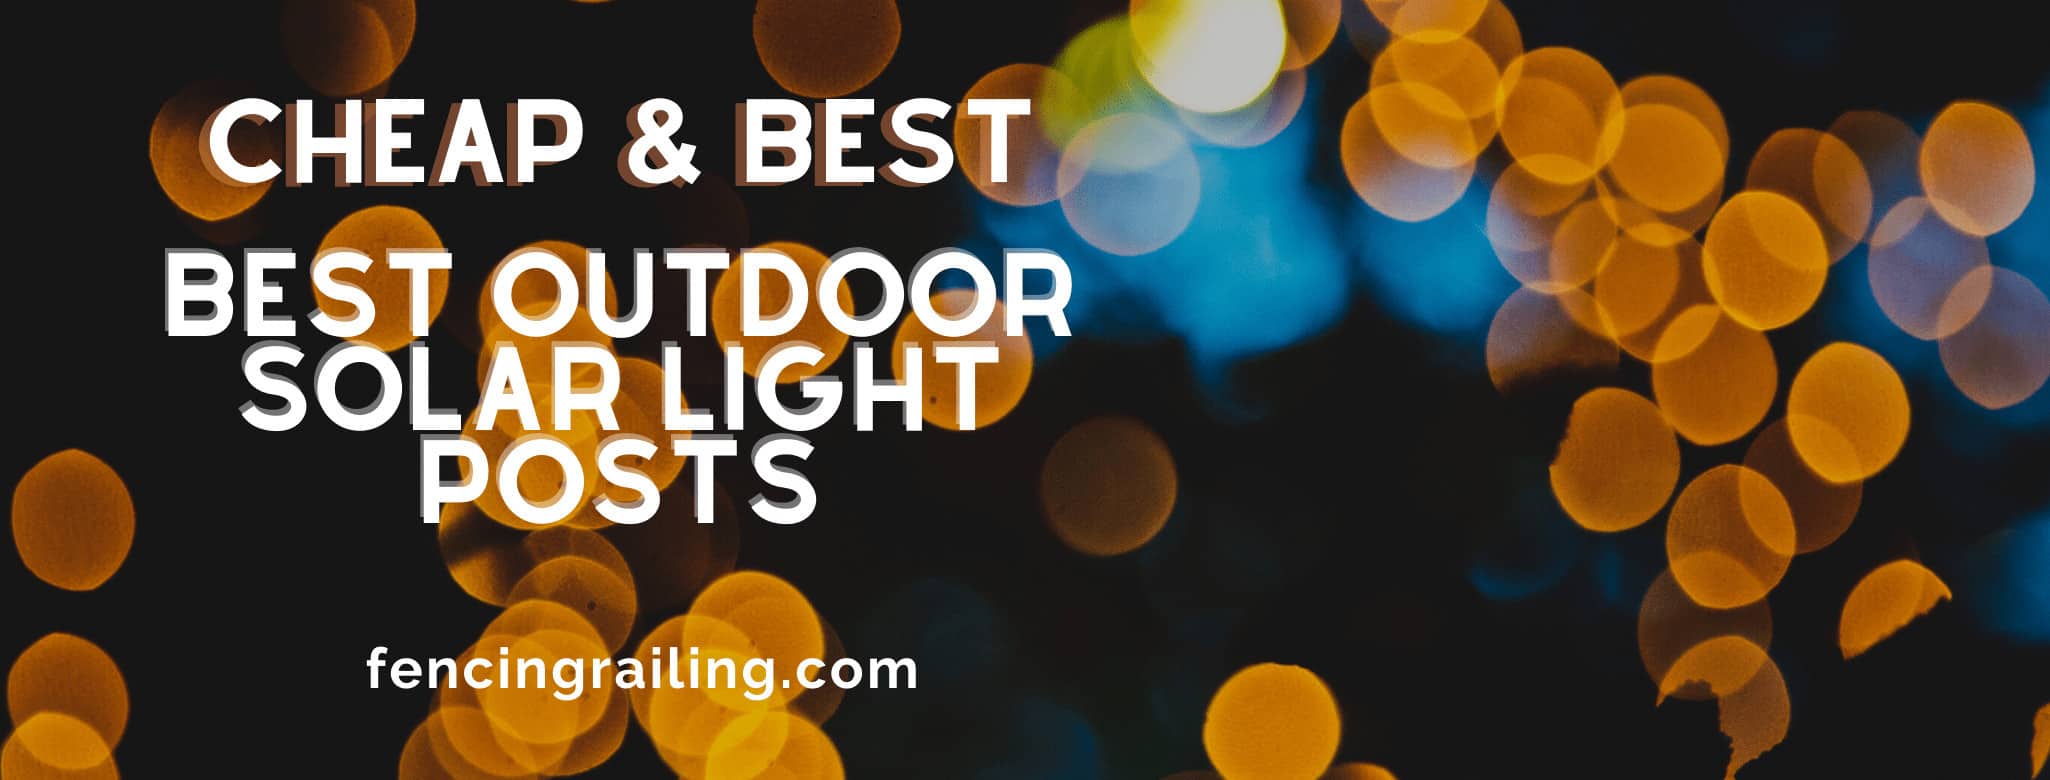 Best Outdoor Solar Light Posts